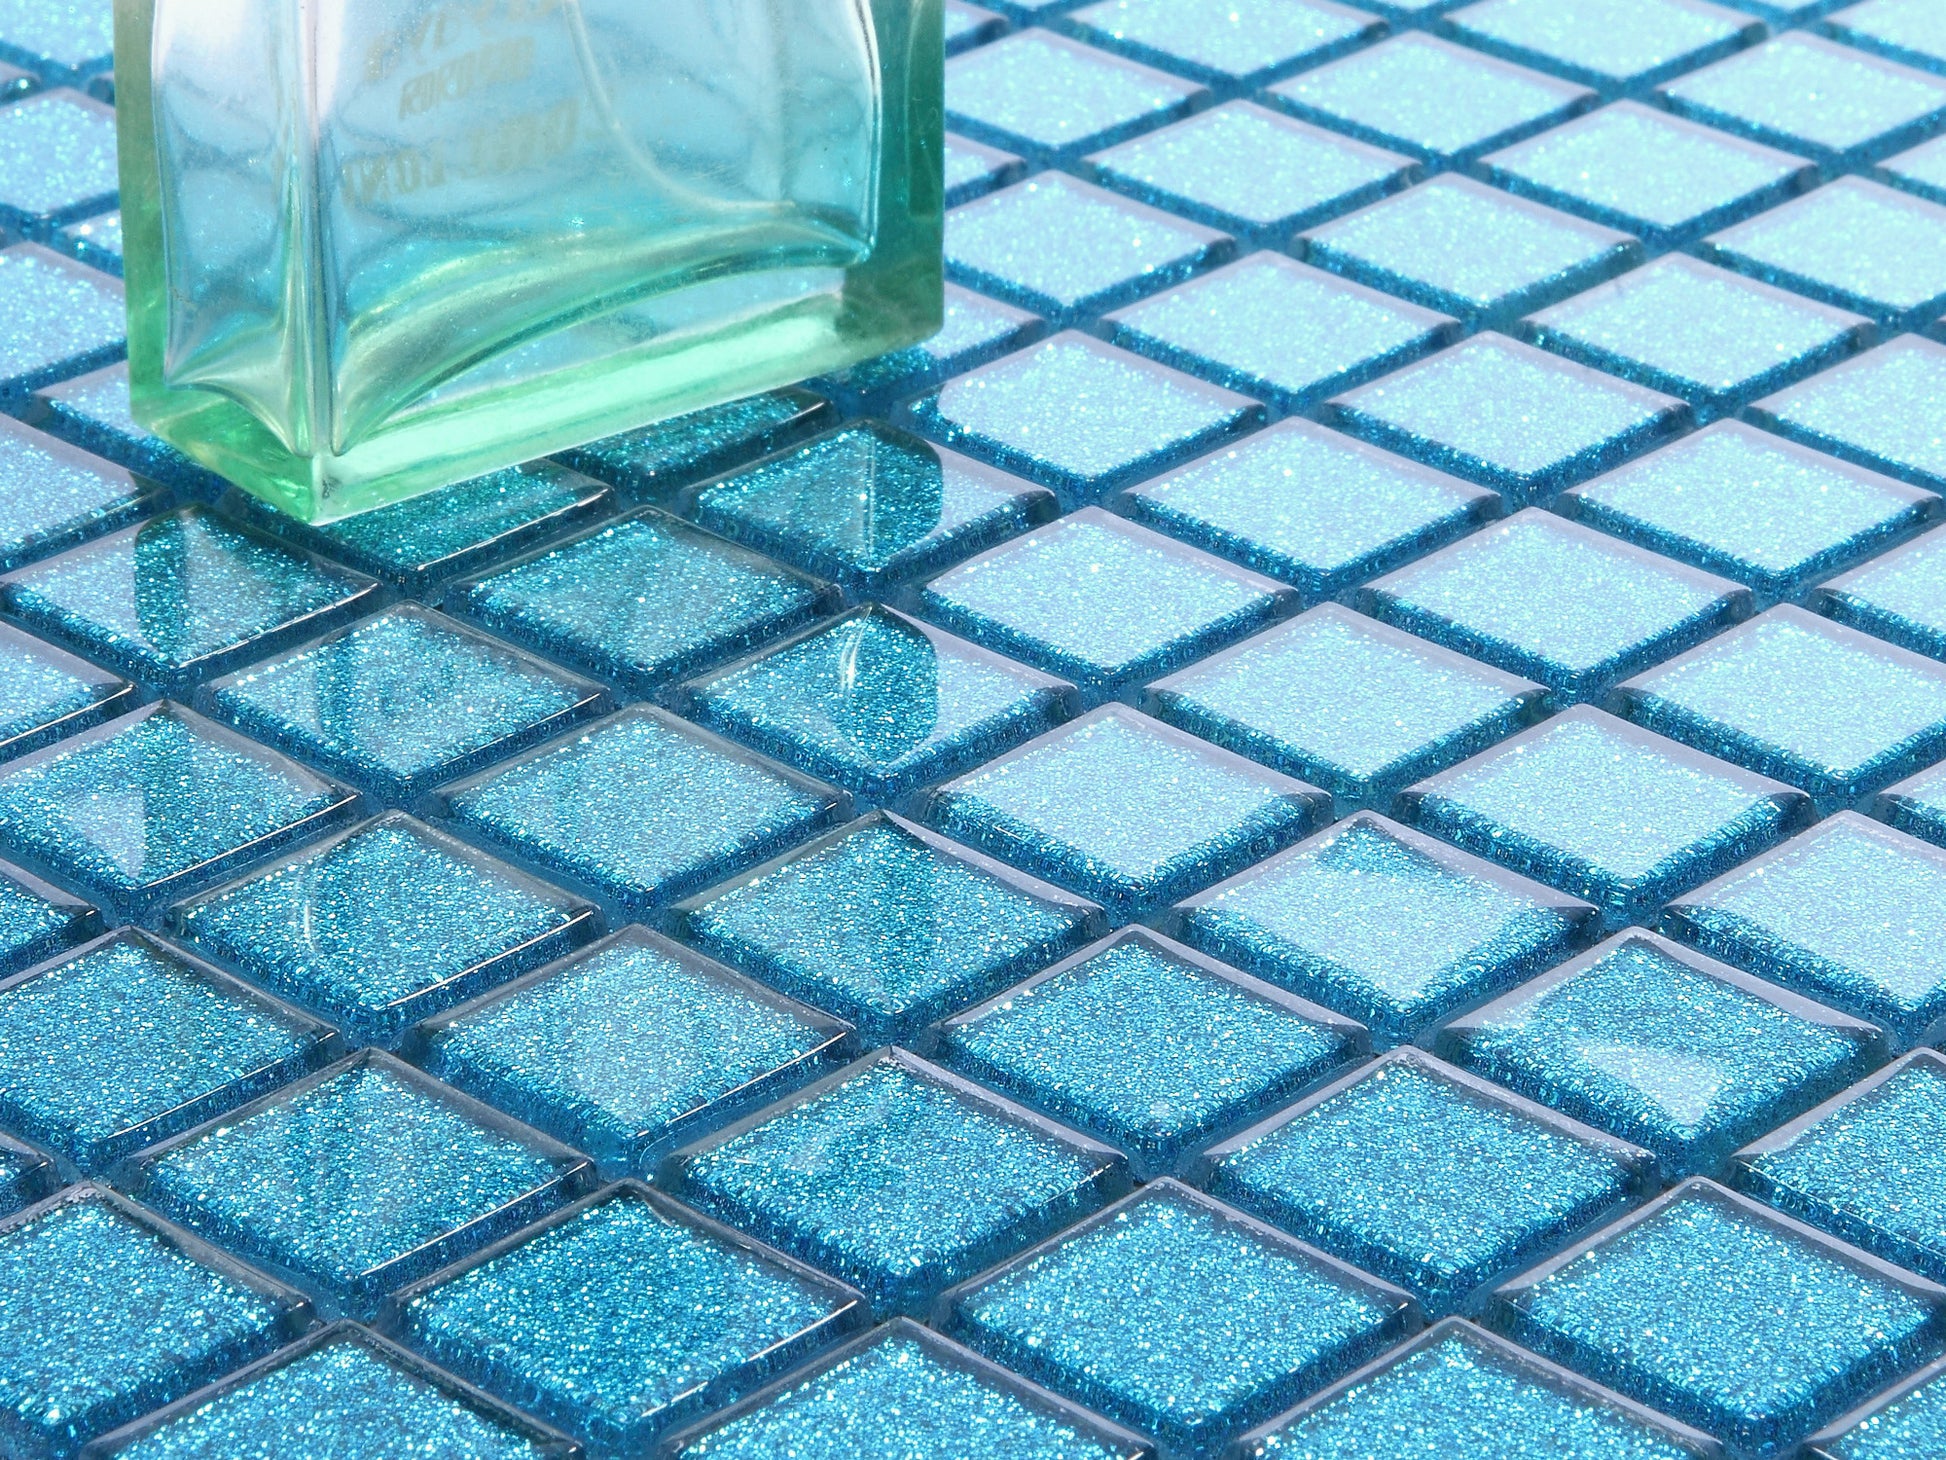 Glas Mosaik Fliesen Matten in Blau mit Glitzer (MT0008 ) - Complement Fusion